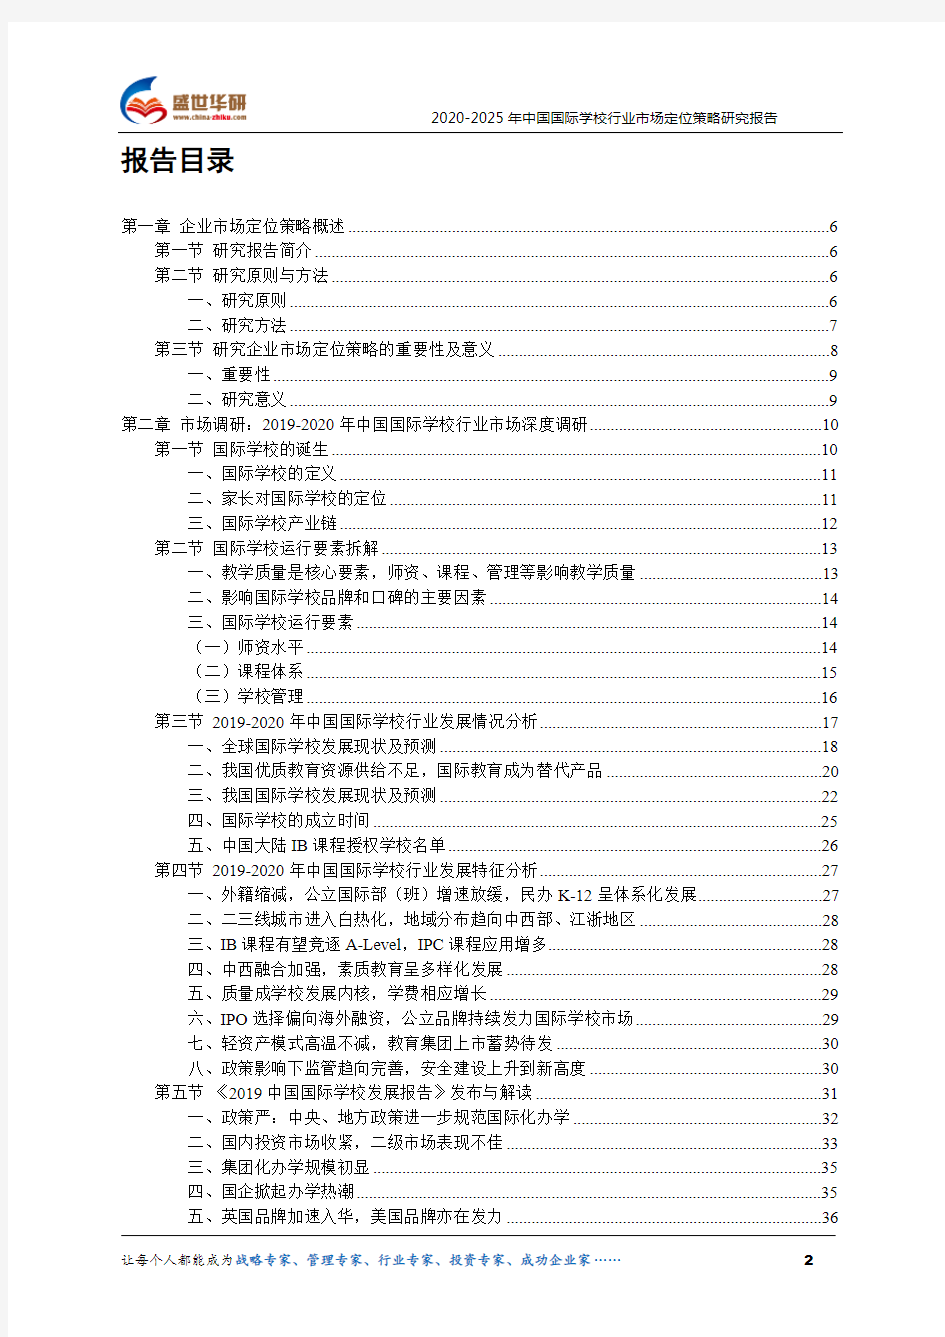 【完整版】2020-2025年中国国际学校行业市场定位策略研究报告